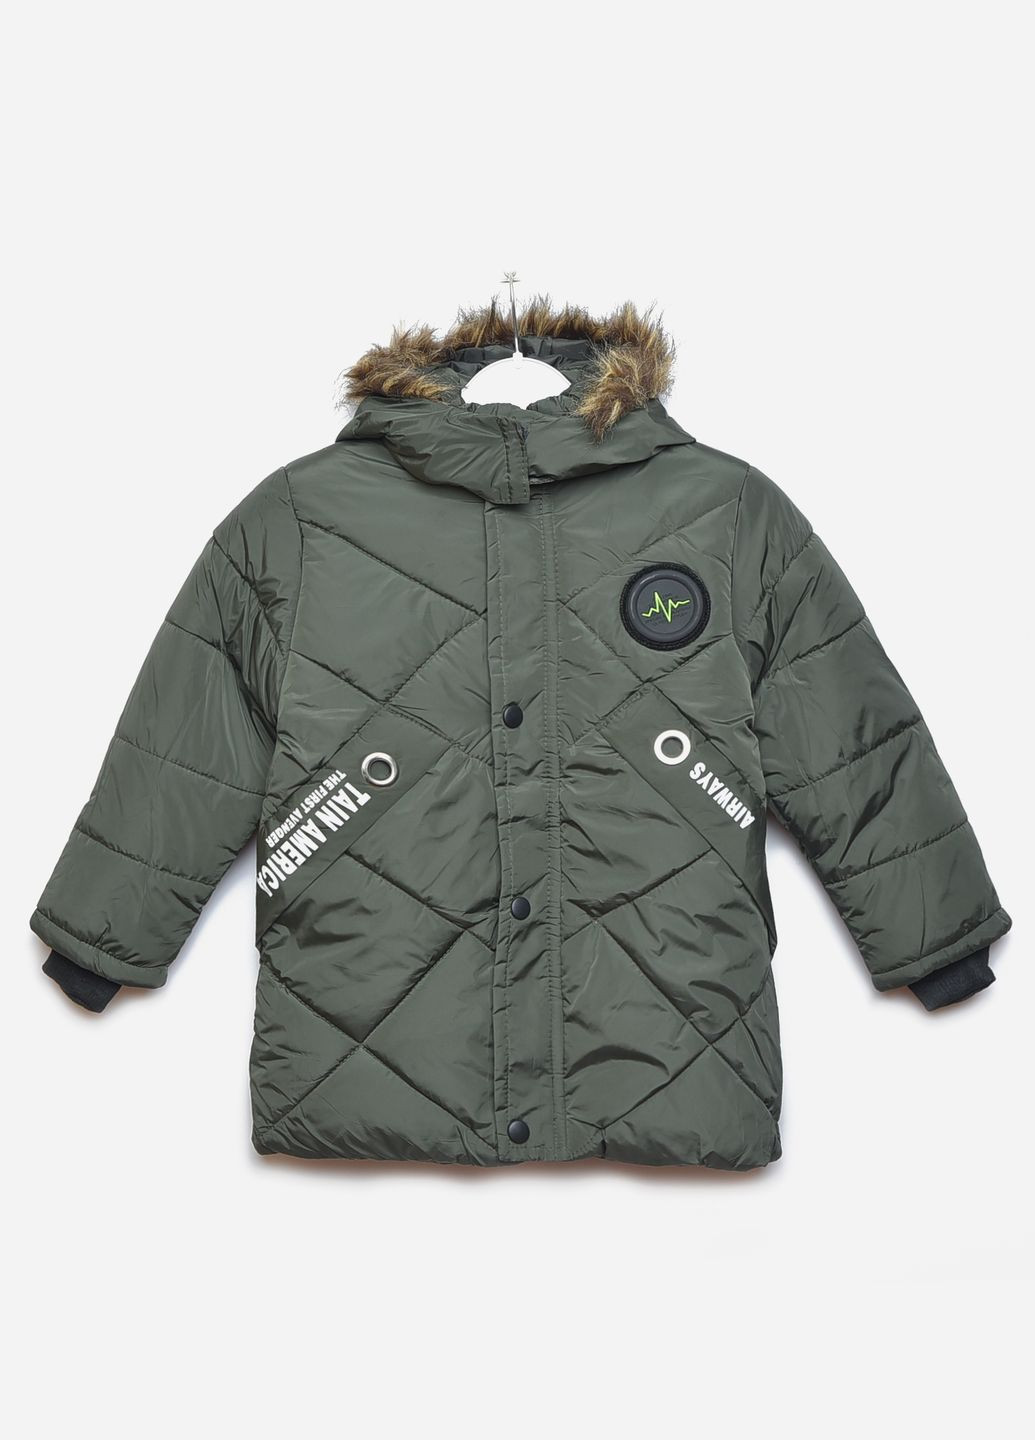 Оливковая (хаки) зимняя куртка детская зимняя для мальчика цвета хаки Let's Shop